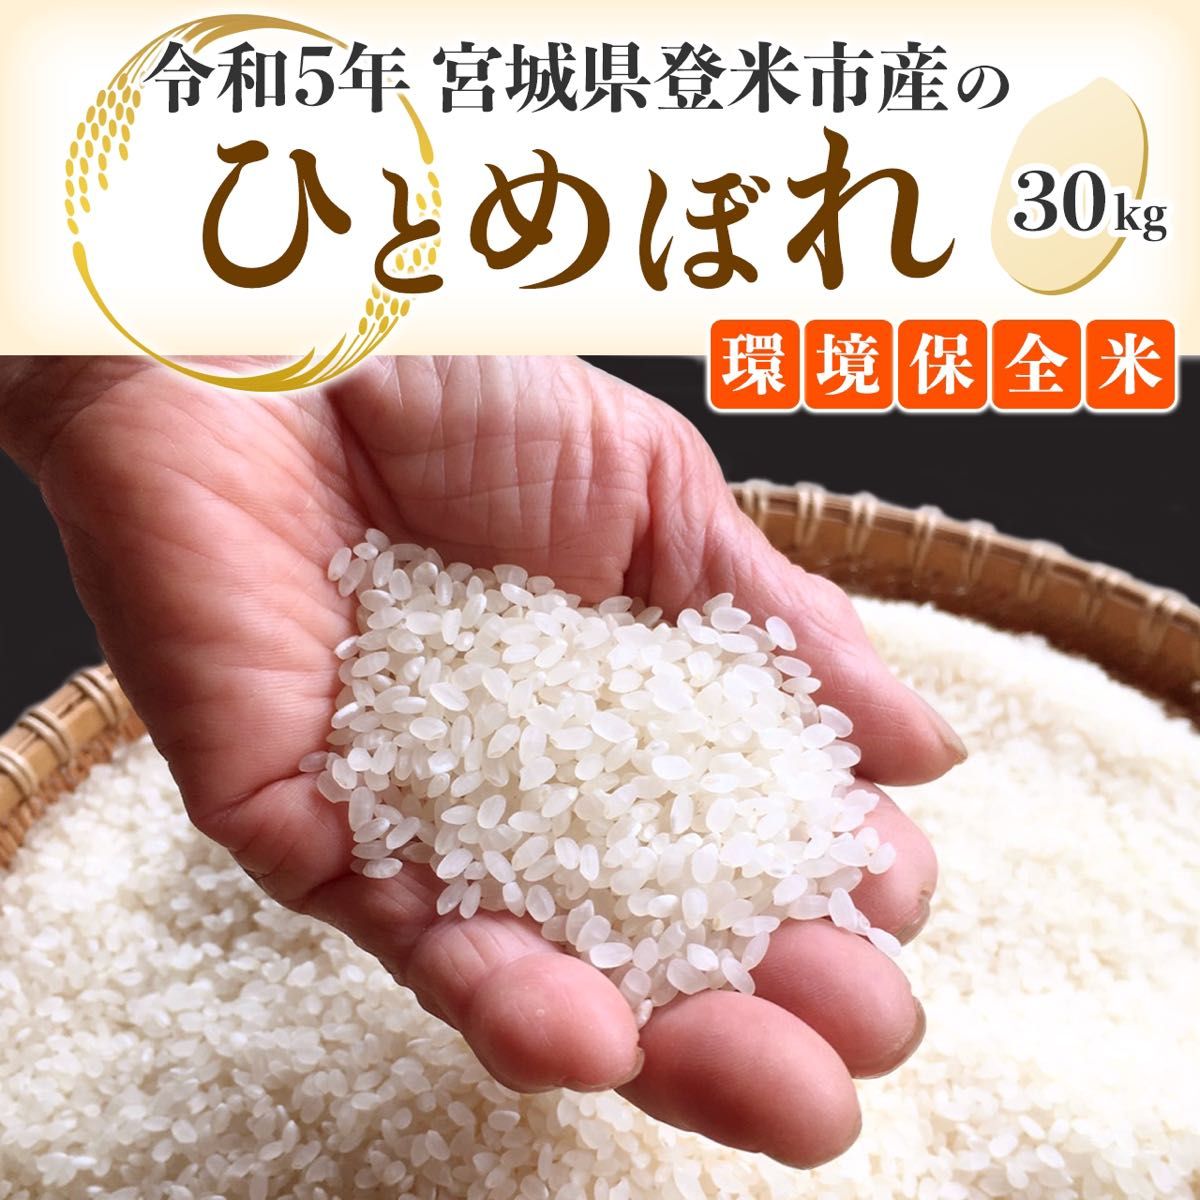 【令和5年度産】 宮城県登米市産 ひとめぼれ米 白米 30kg 環境保全米